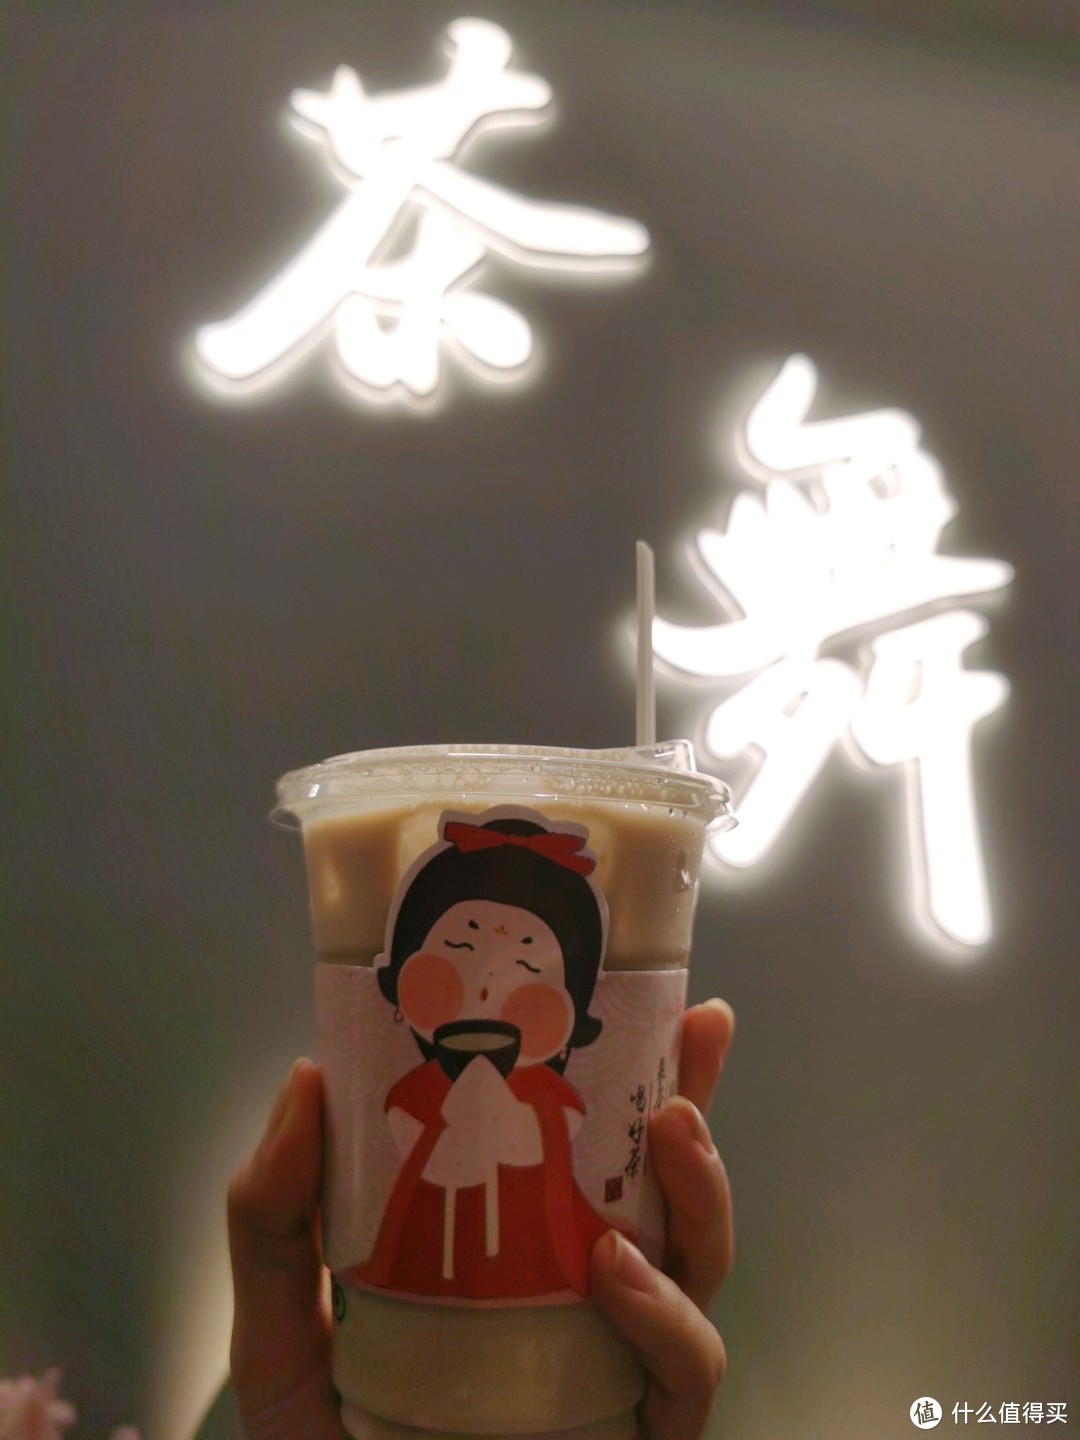 发现一家汉风奶茶店——霓裳茶舞，原以为是山寨茶颜悦色，结果是真亲属关系